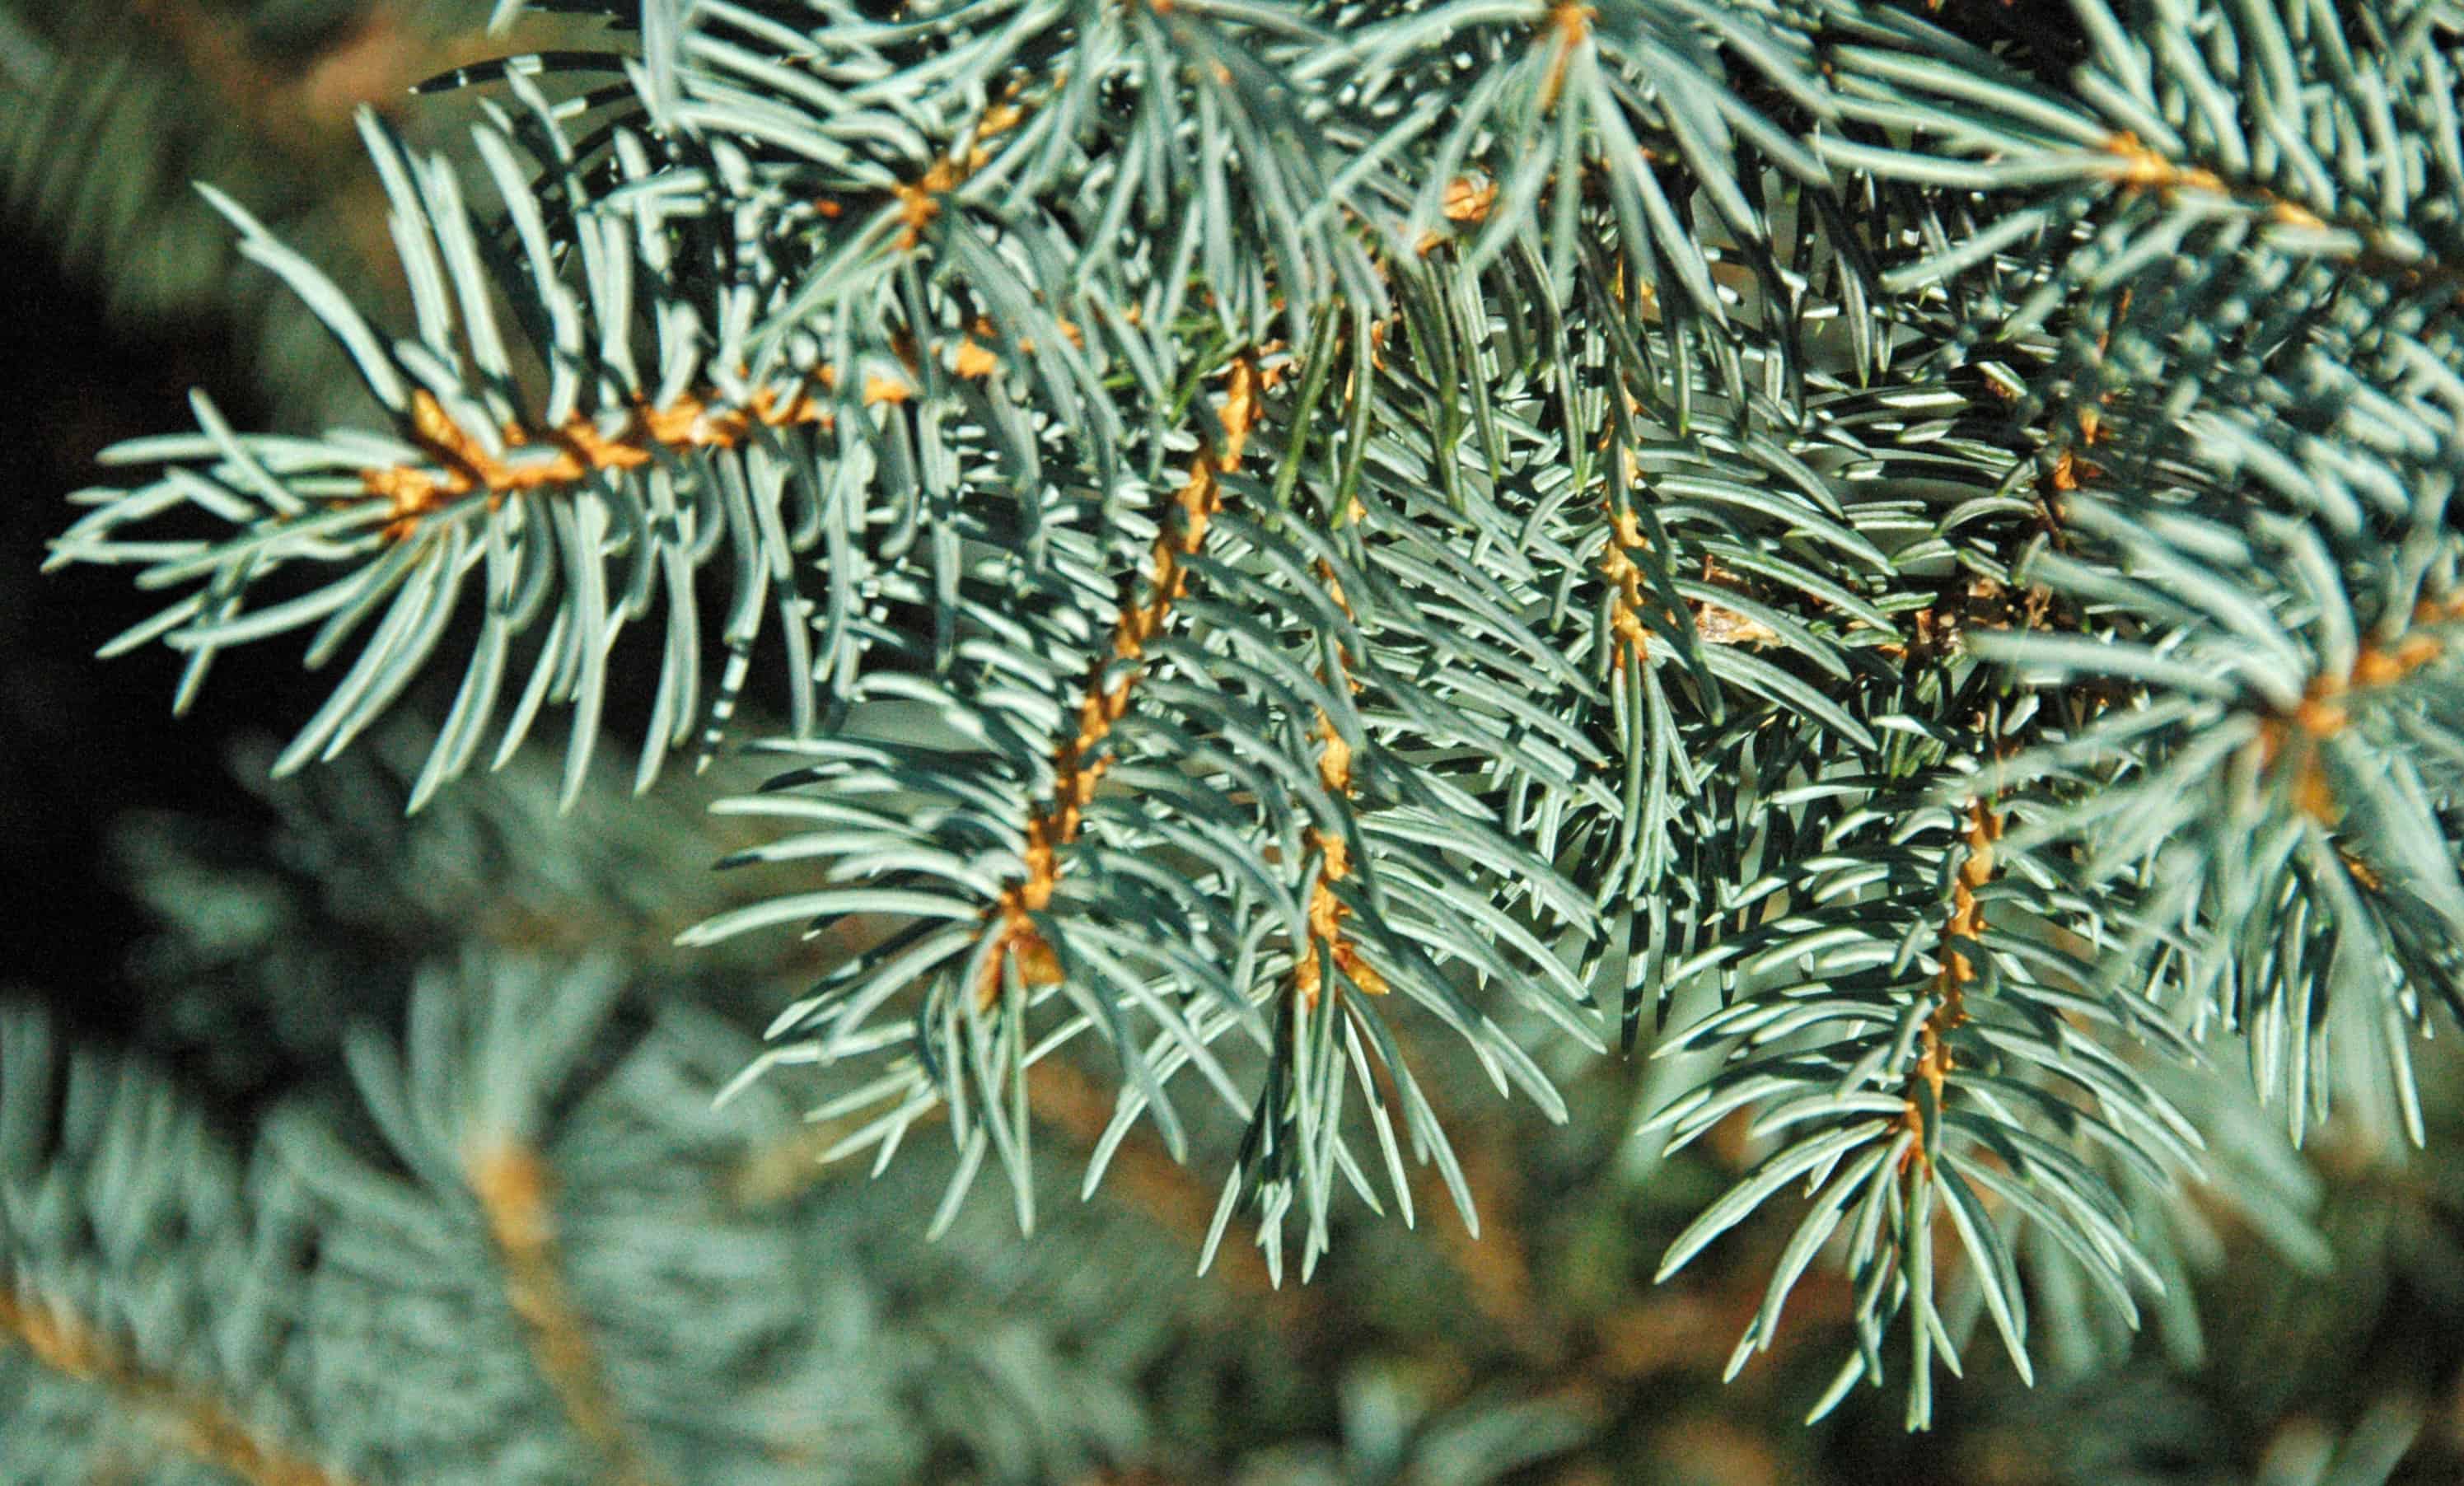 colorado blue spruce